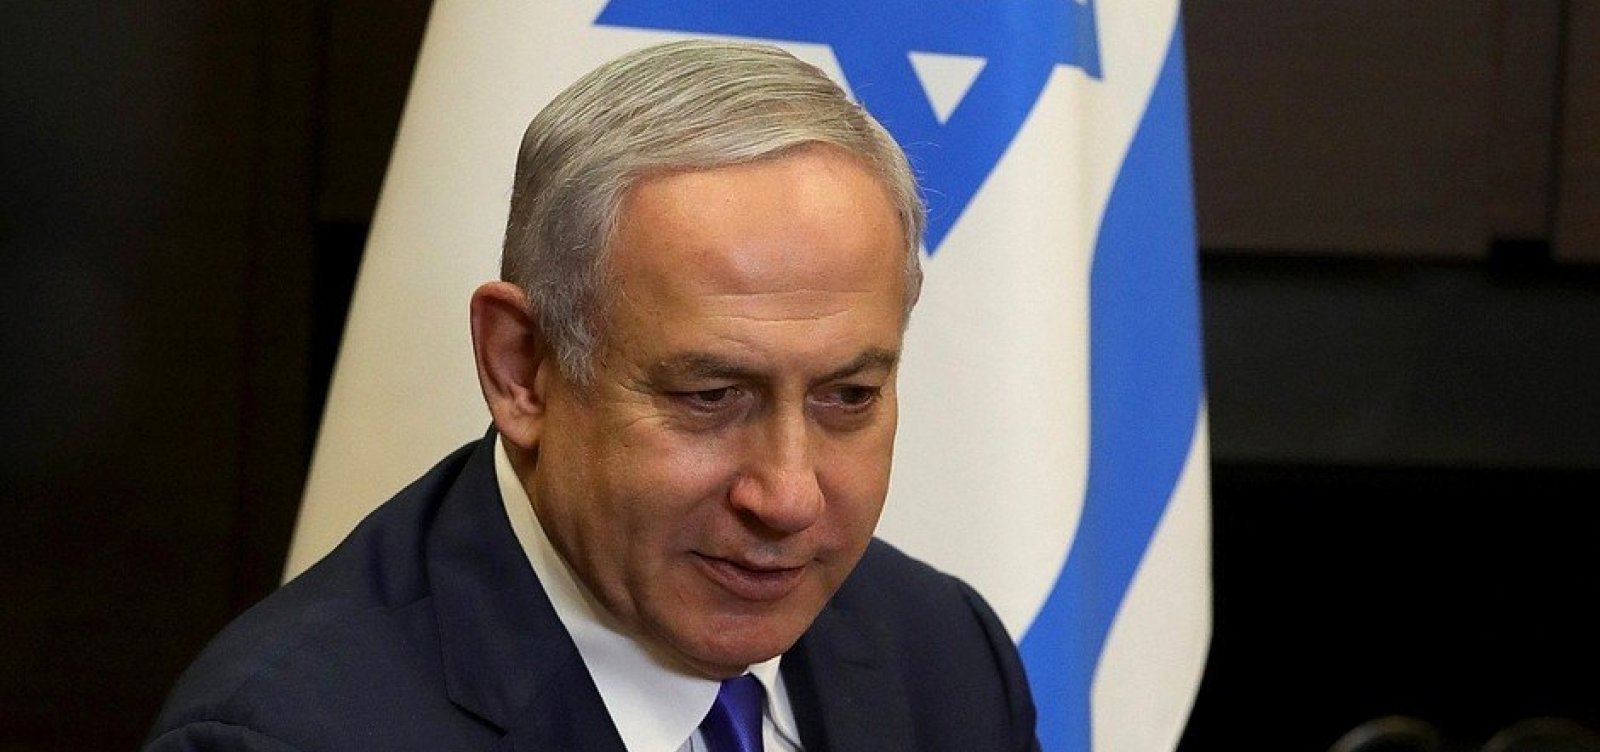 Primeiro-ministro de Israel, Benjamin Netanyahu começa a ser julgado por corrupção